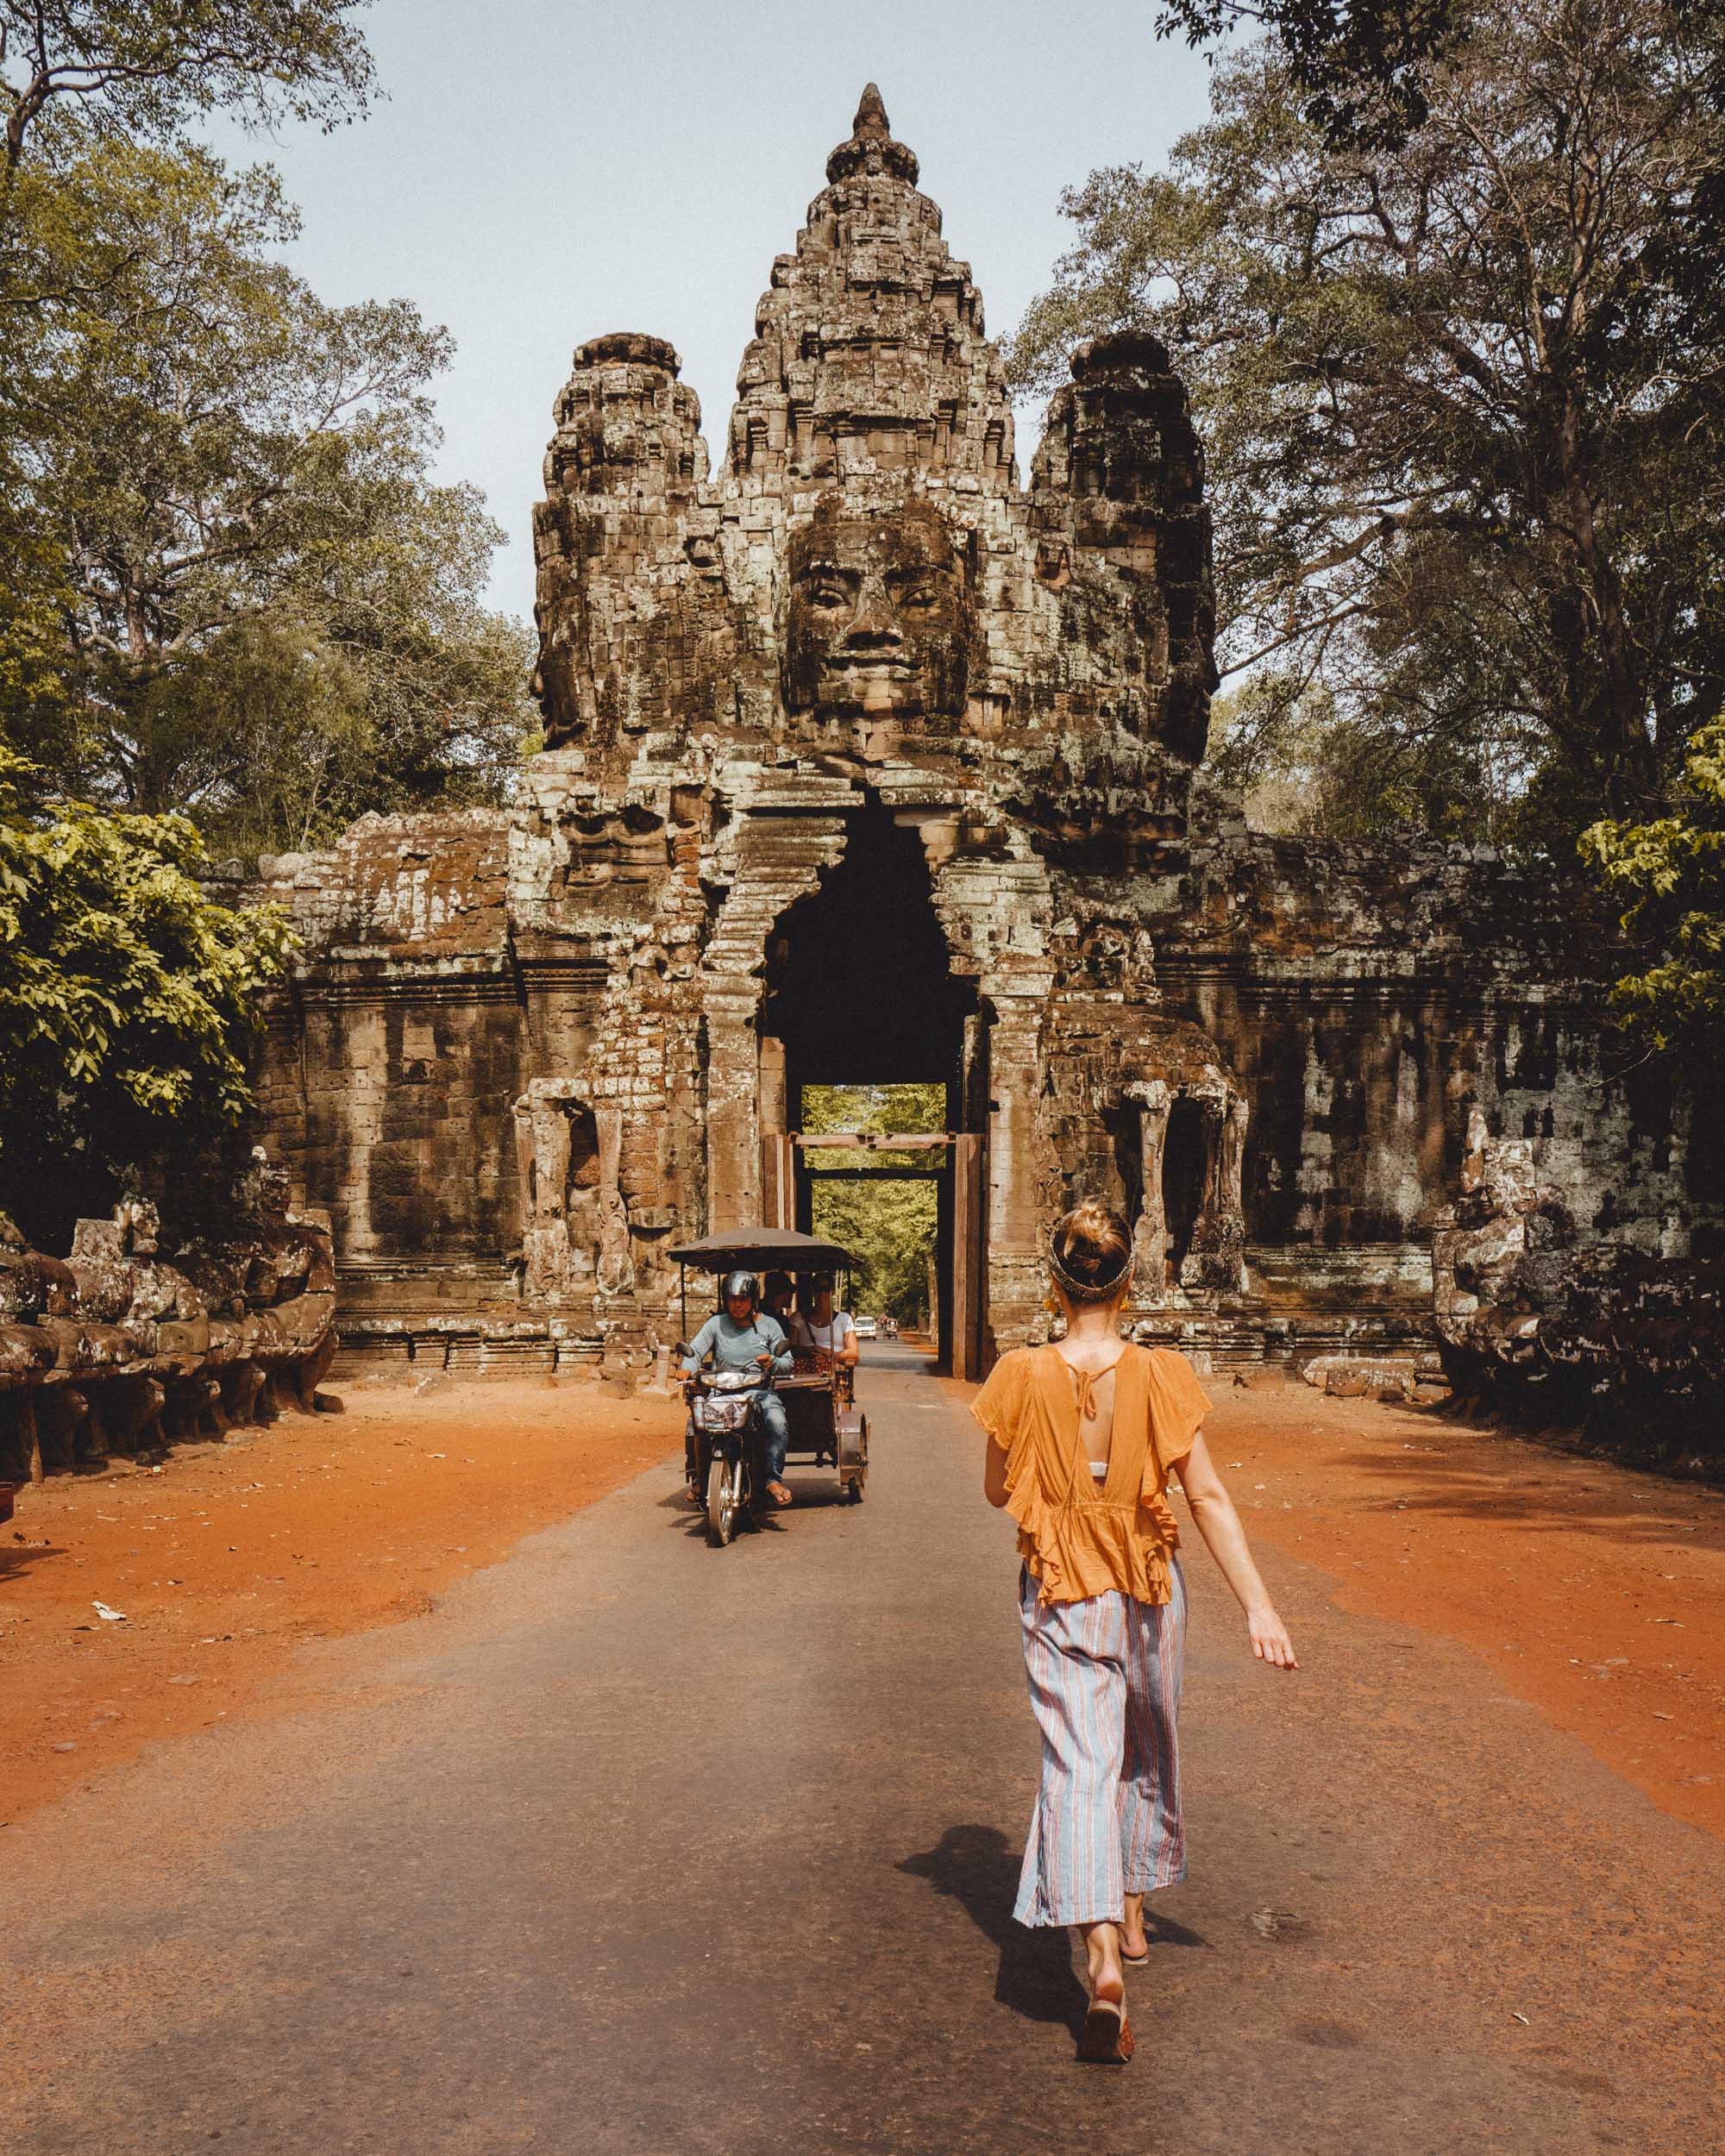 Bayon temple entrance with tuk tuk in Angkor Wat Cambodia